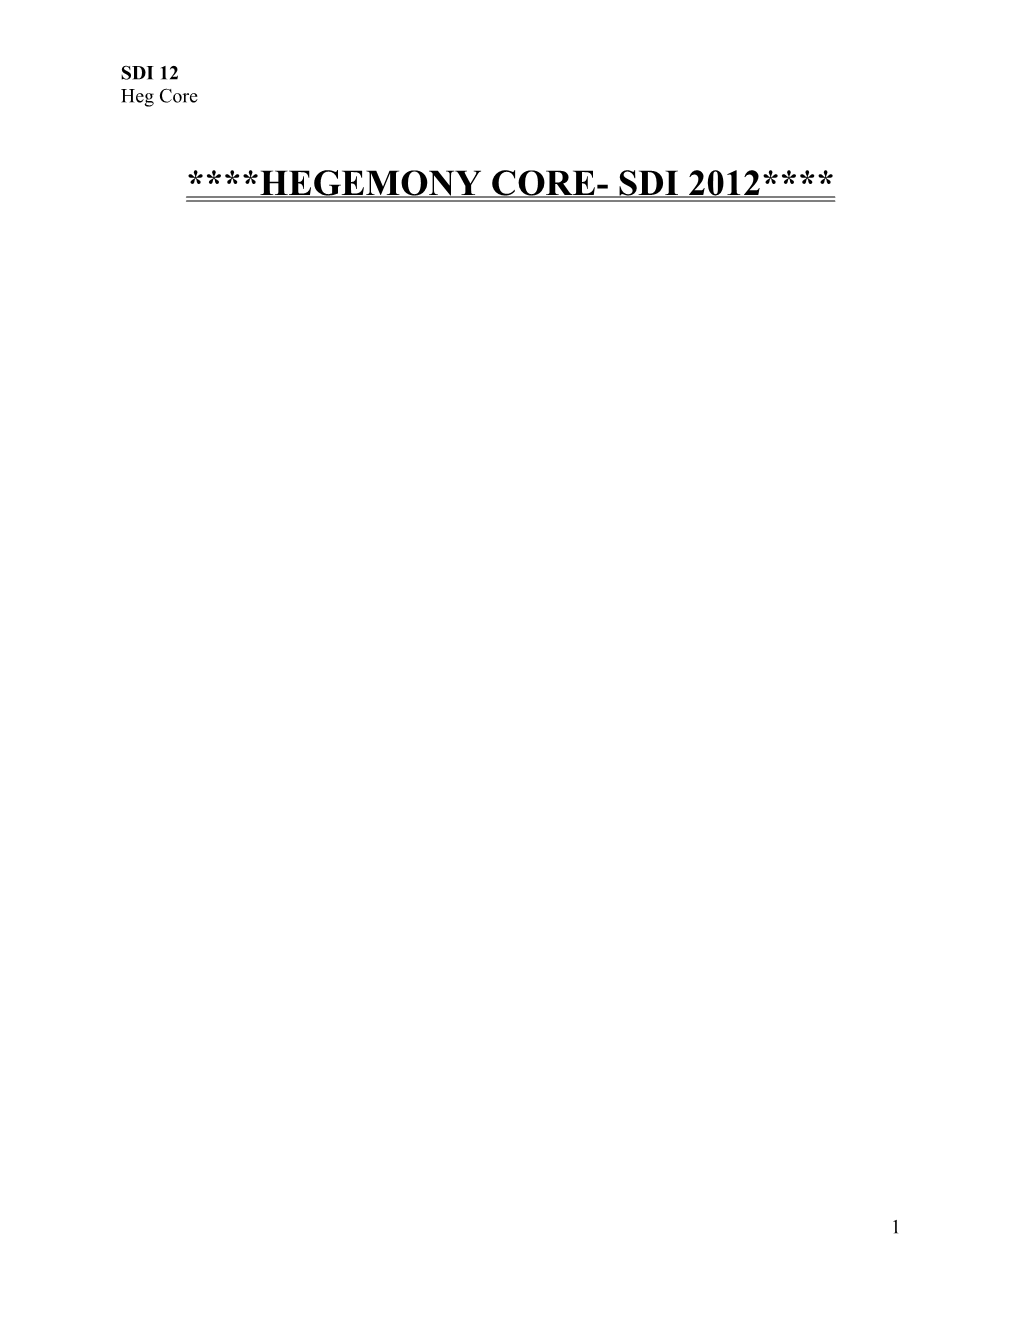 Hegemony Core- Sdi 2012